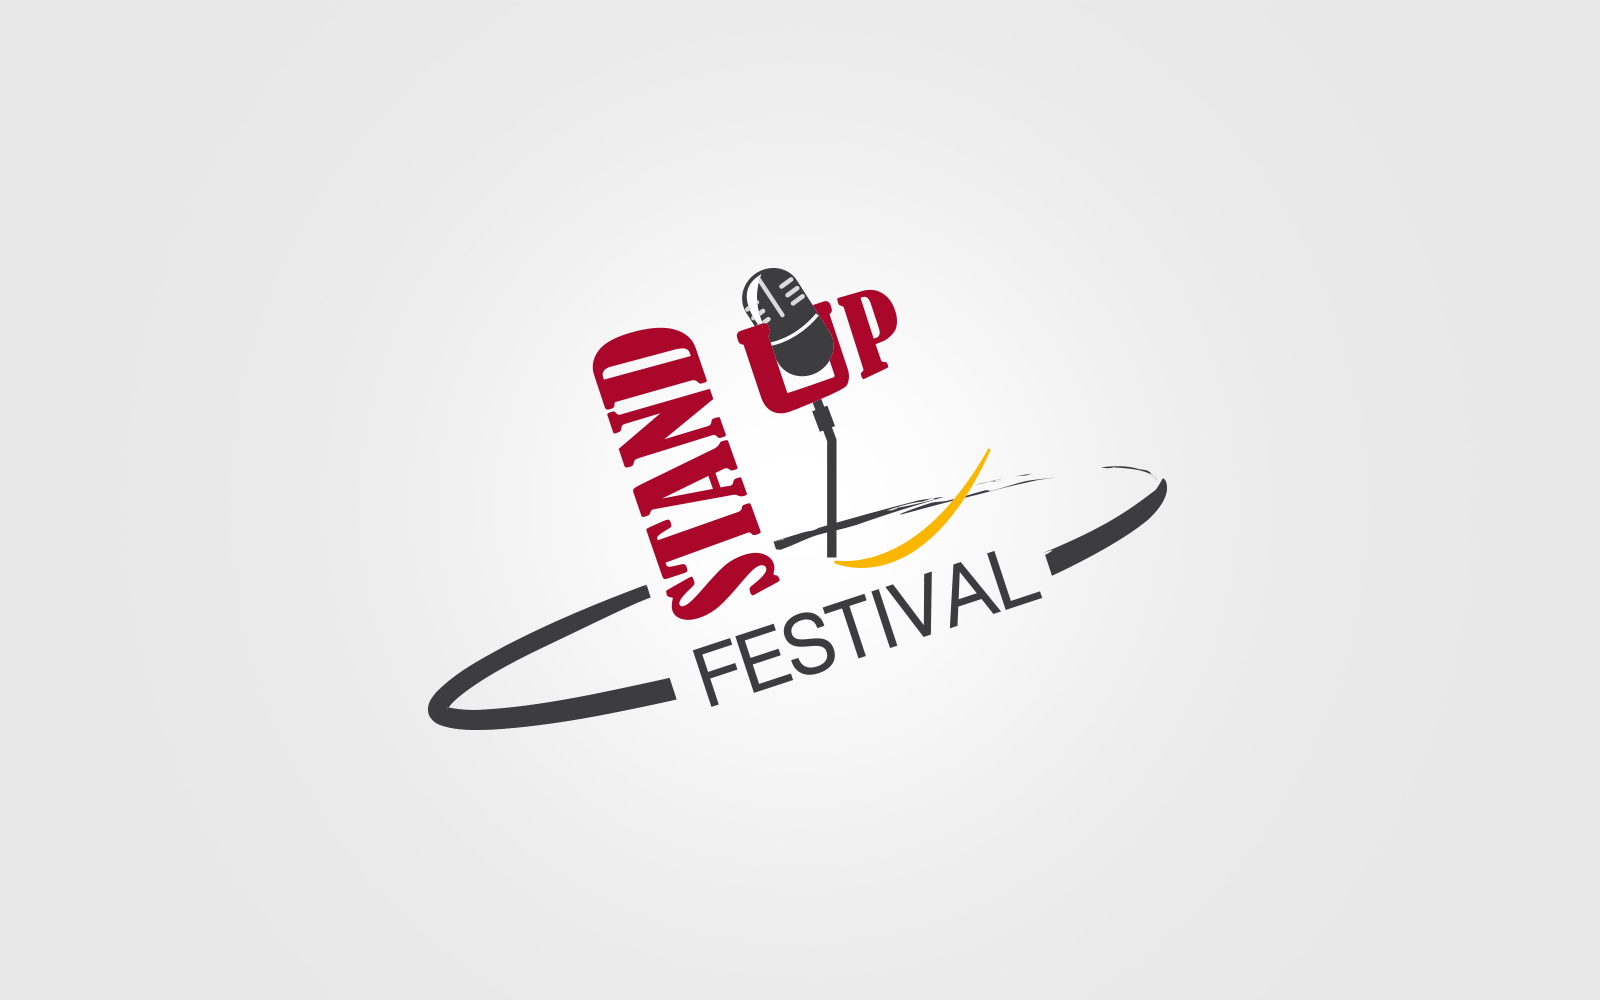 StandUp Festival logo